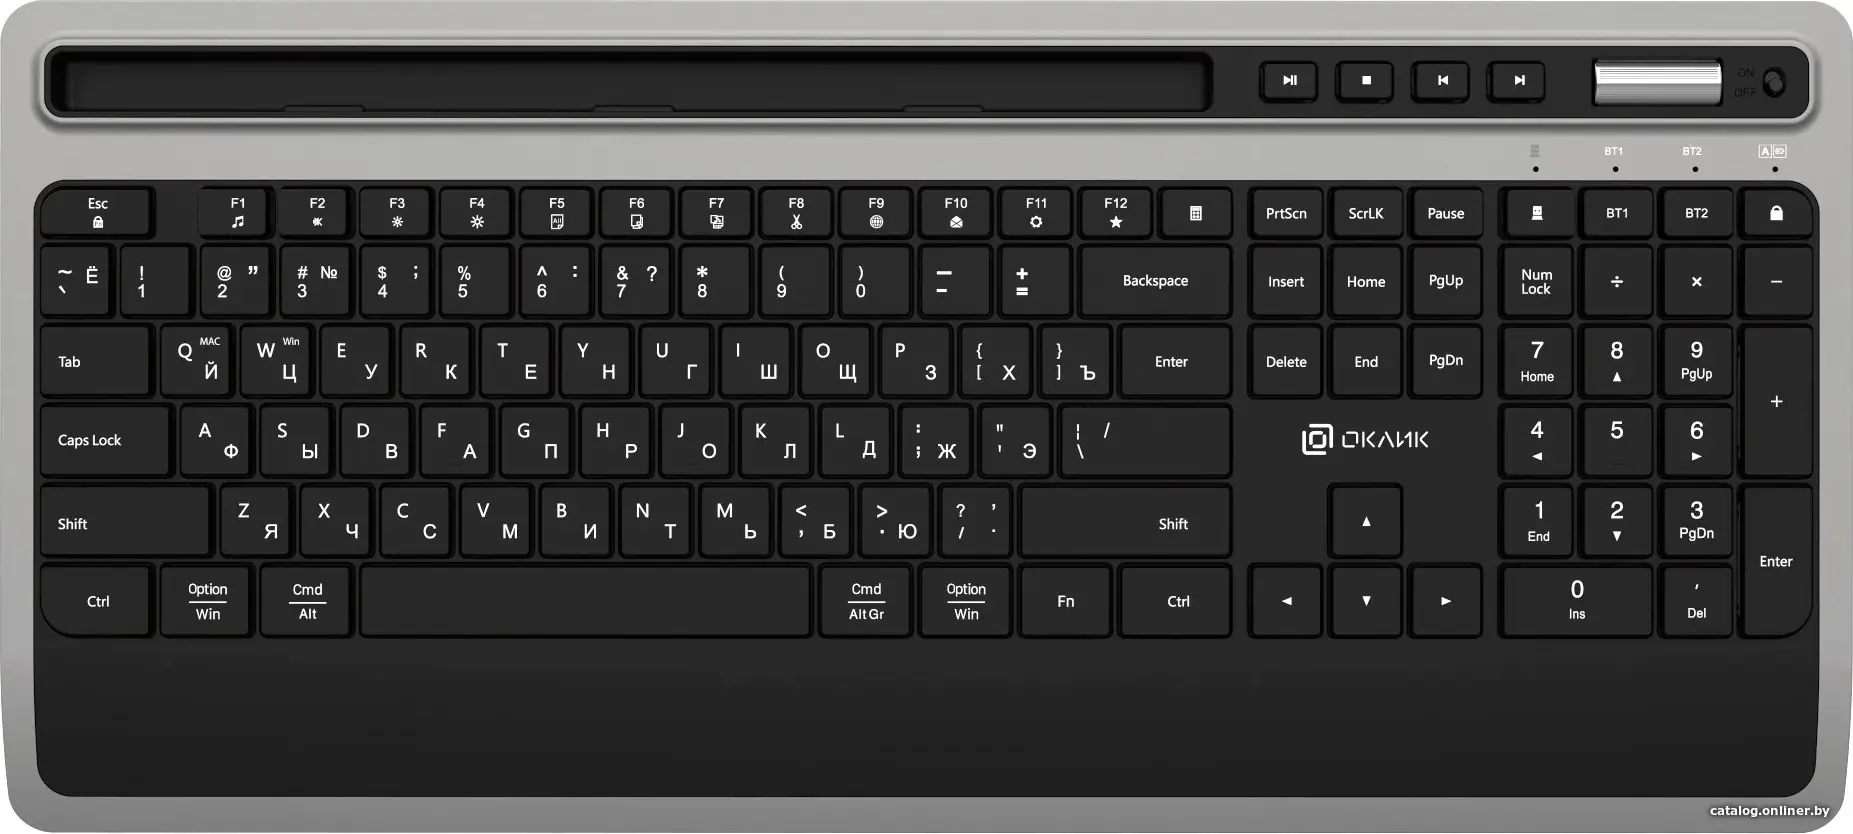 Купить Клавиатура Oklick 860S черный, цена, опт и розница